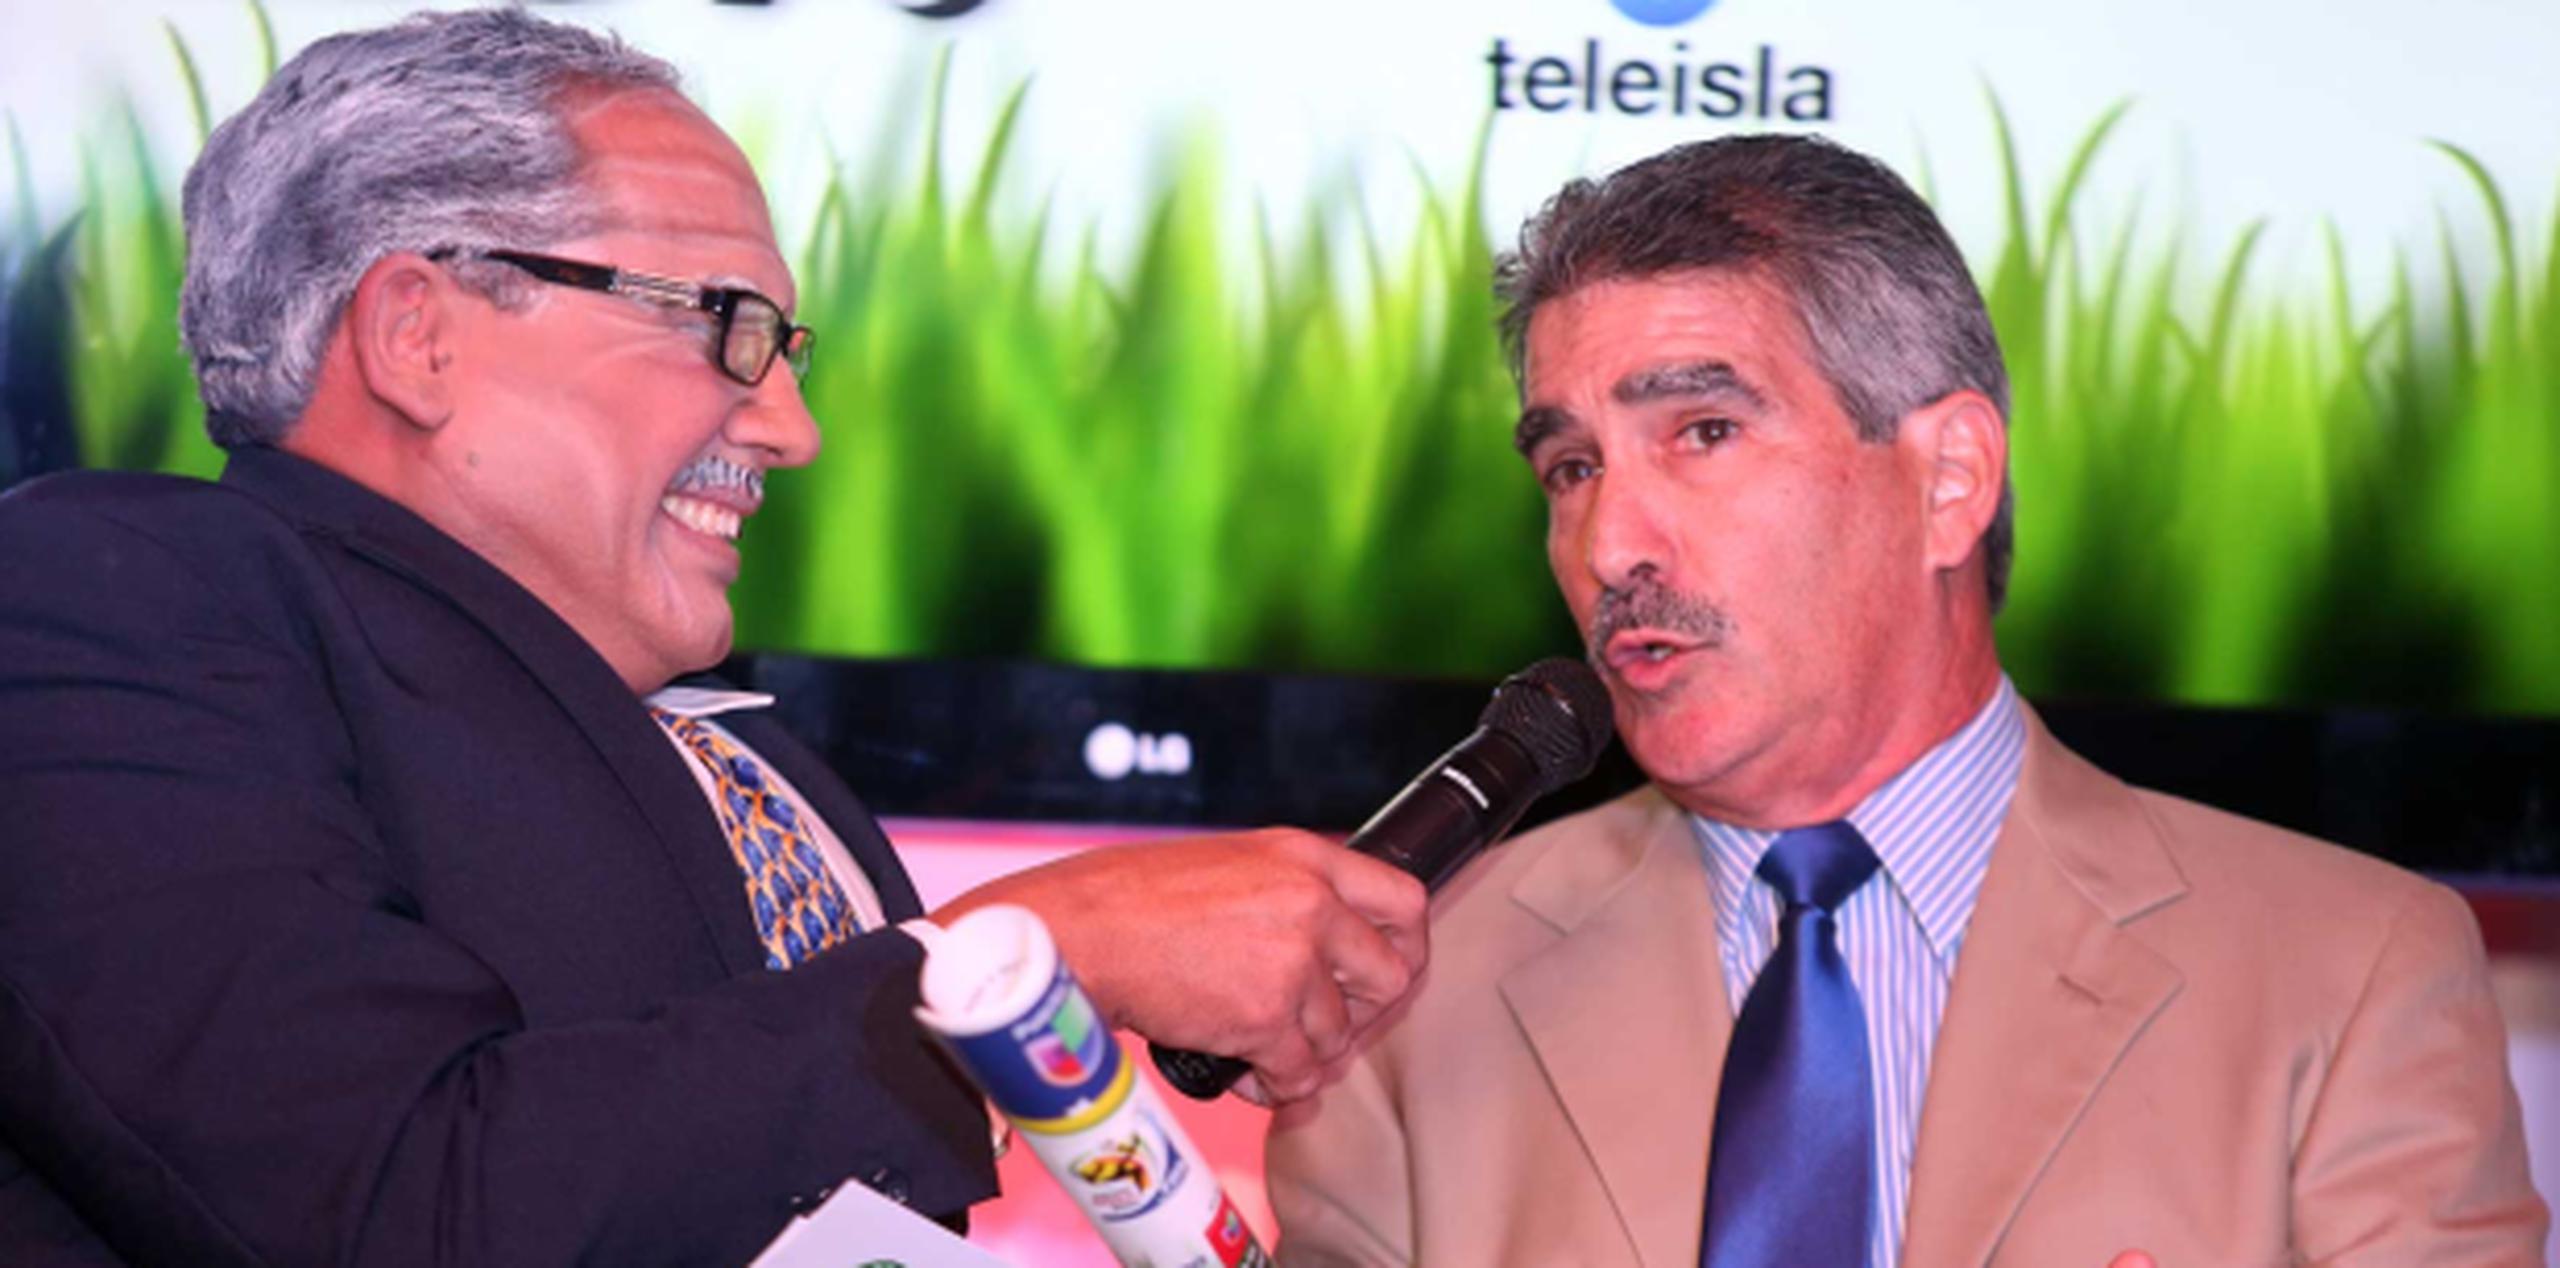 El personaje Elliot Castrado, interpretado por el comediante Herbert Cruz, entrevista al vicepresidente y director de ventas de Univision, Carlos Pagán. (david.villafane@gfrmedia.com)